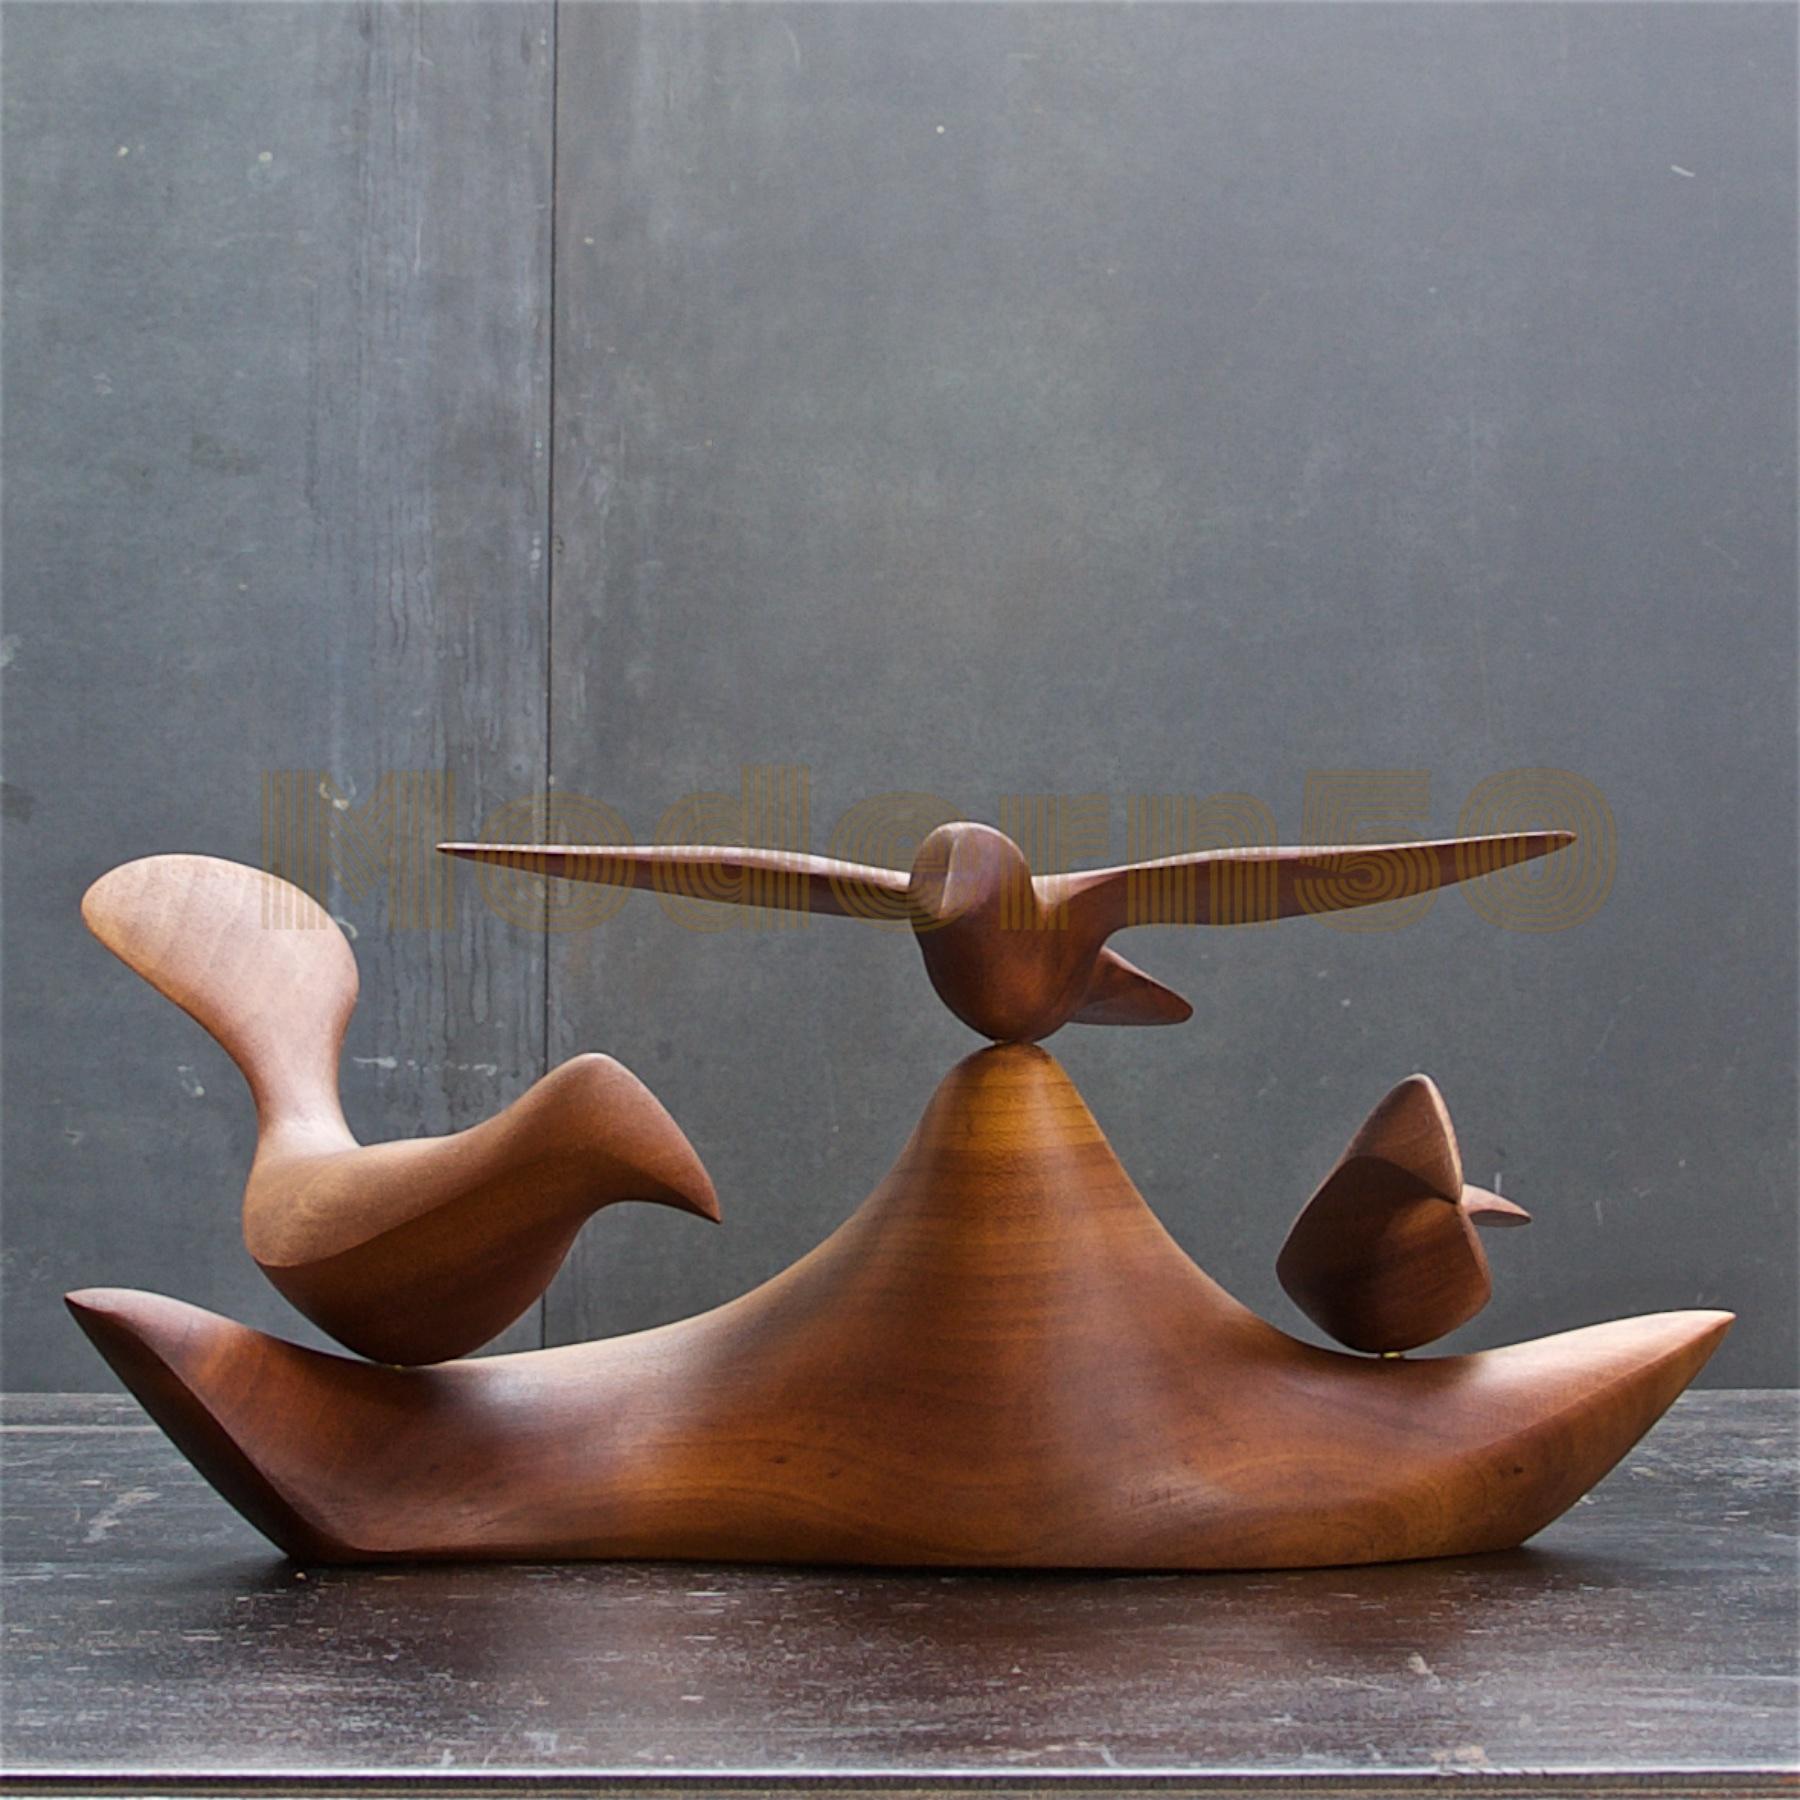 Forme rare. Bel exemple du travail de sculpture d'Emil Milan. Signé, Date et lieu.